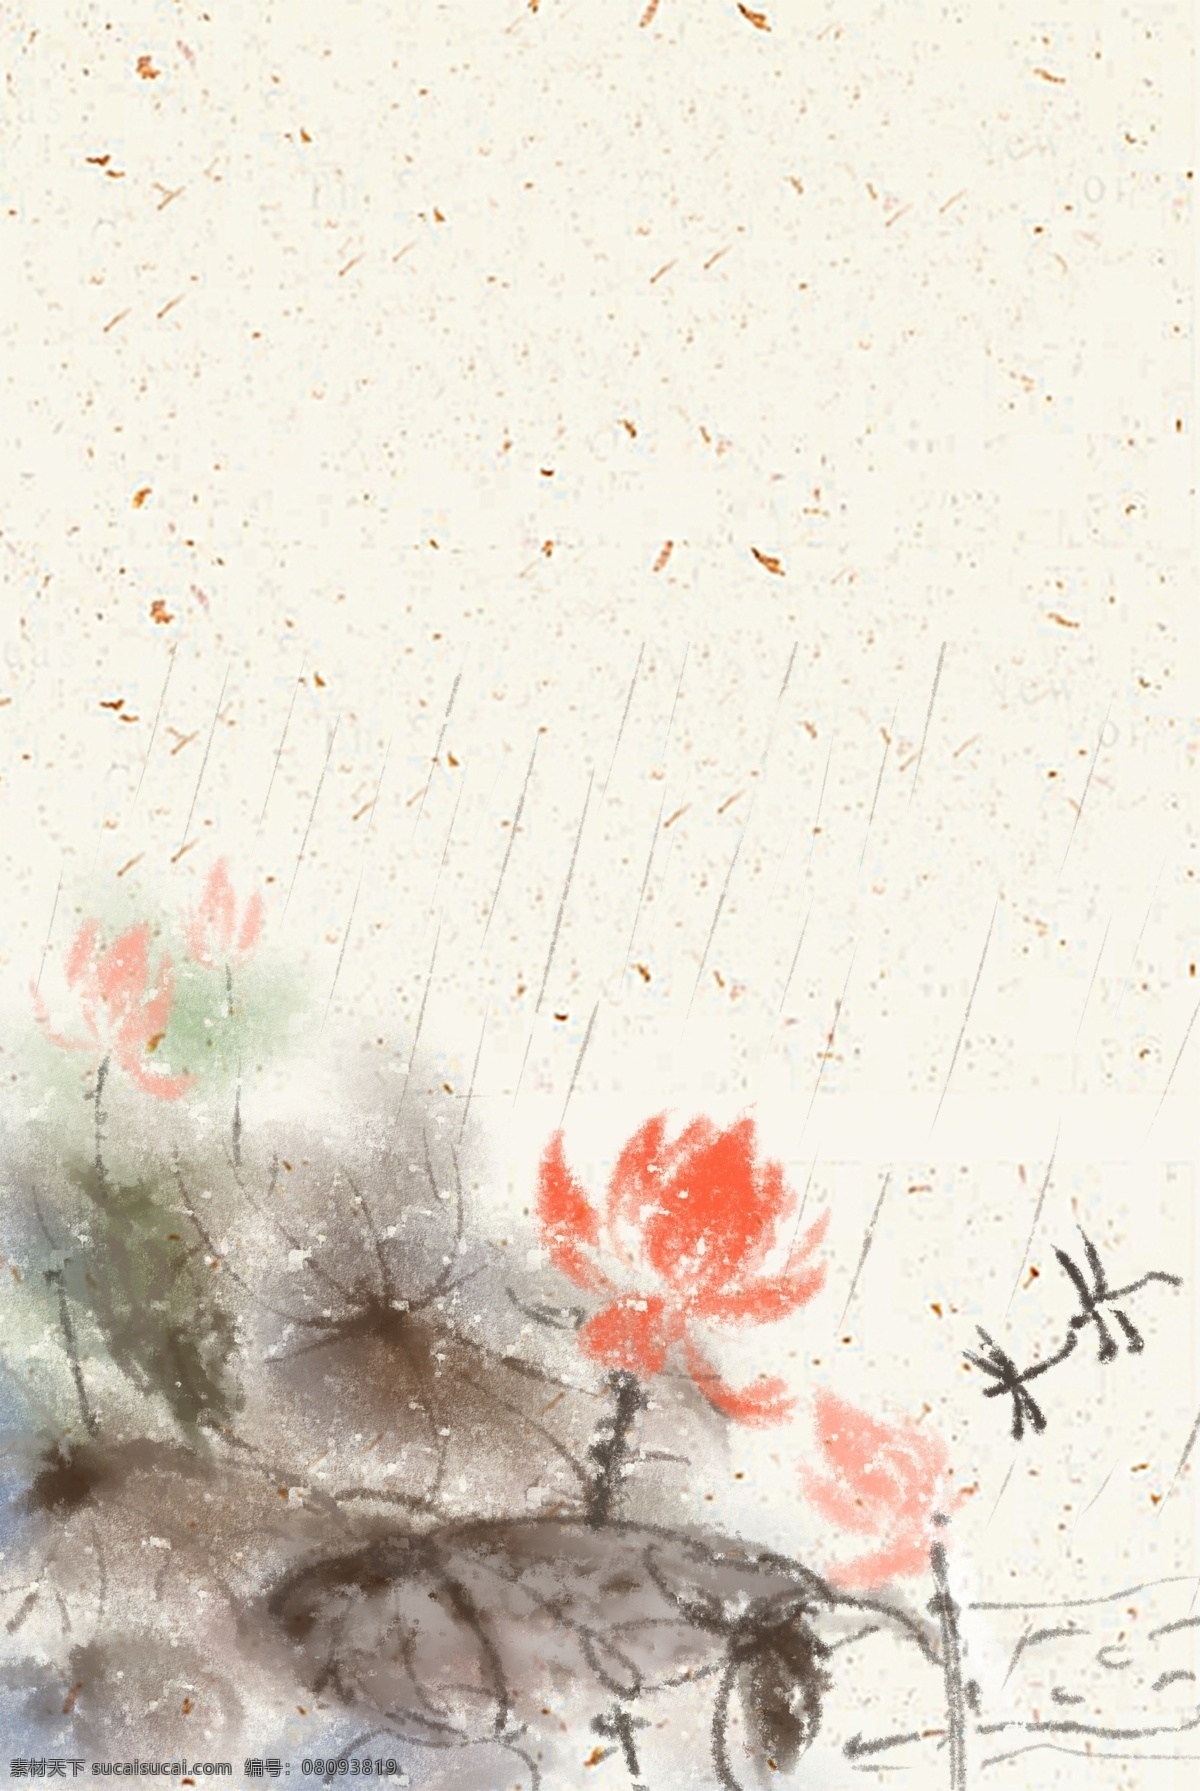 中国 风 淡雅 荷塘 莲花 蜻蜓 背景 中国风 质感 碎金纸底纹 荷花 荷叶 莲蓬 国画 工笔 化妆品 文化